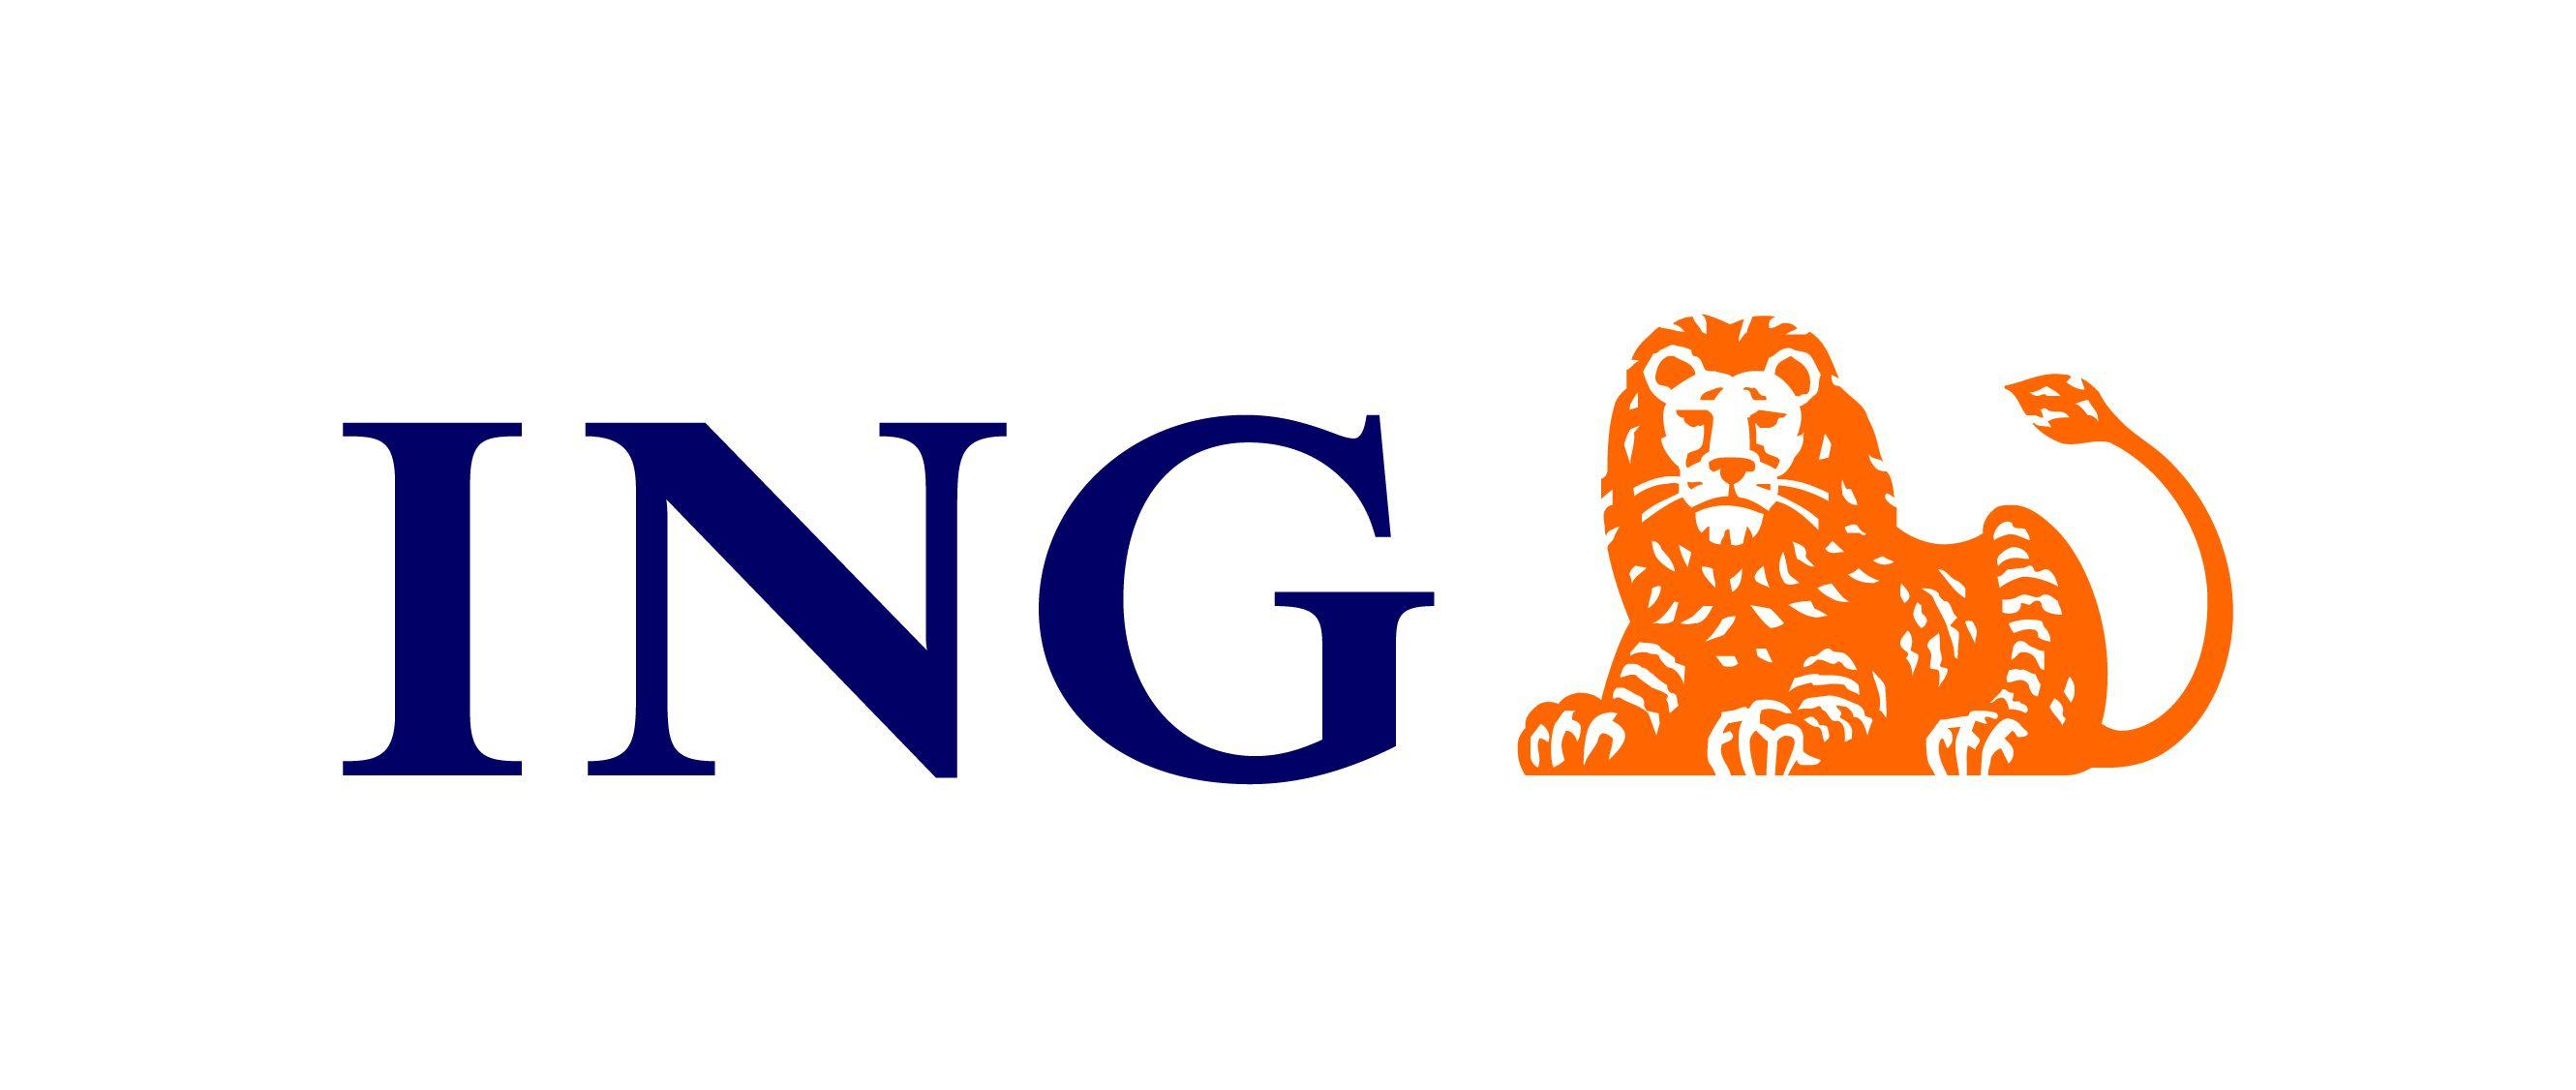 ING Logo - ING